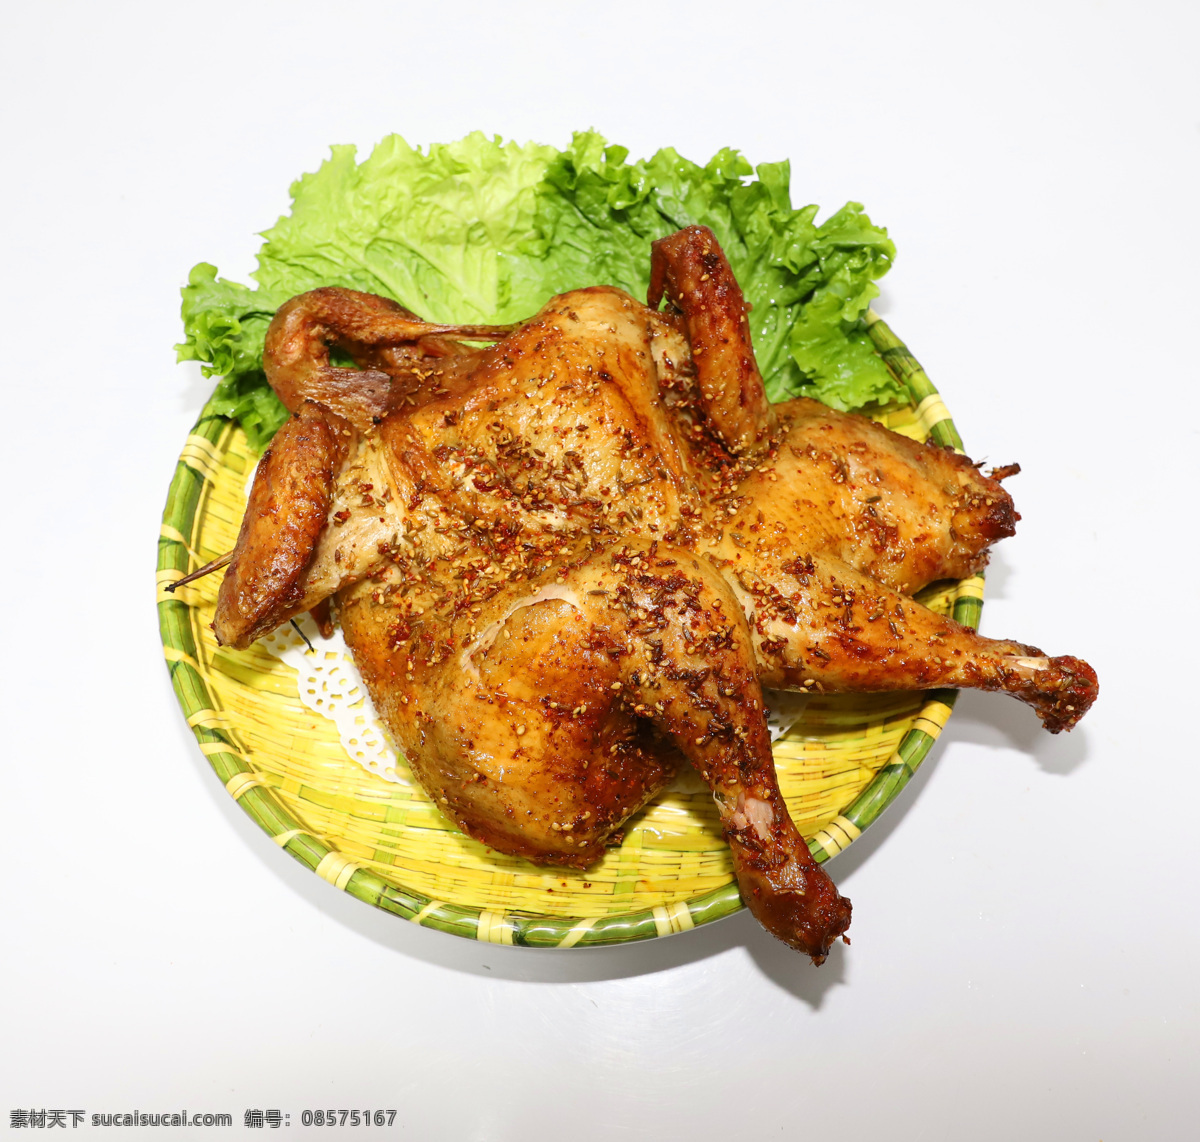 新疆 烤鸡 馕 坑 馕坑 鸡 吊炉 烧烤 烤串 餐饮美食 传统美食